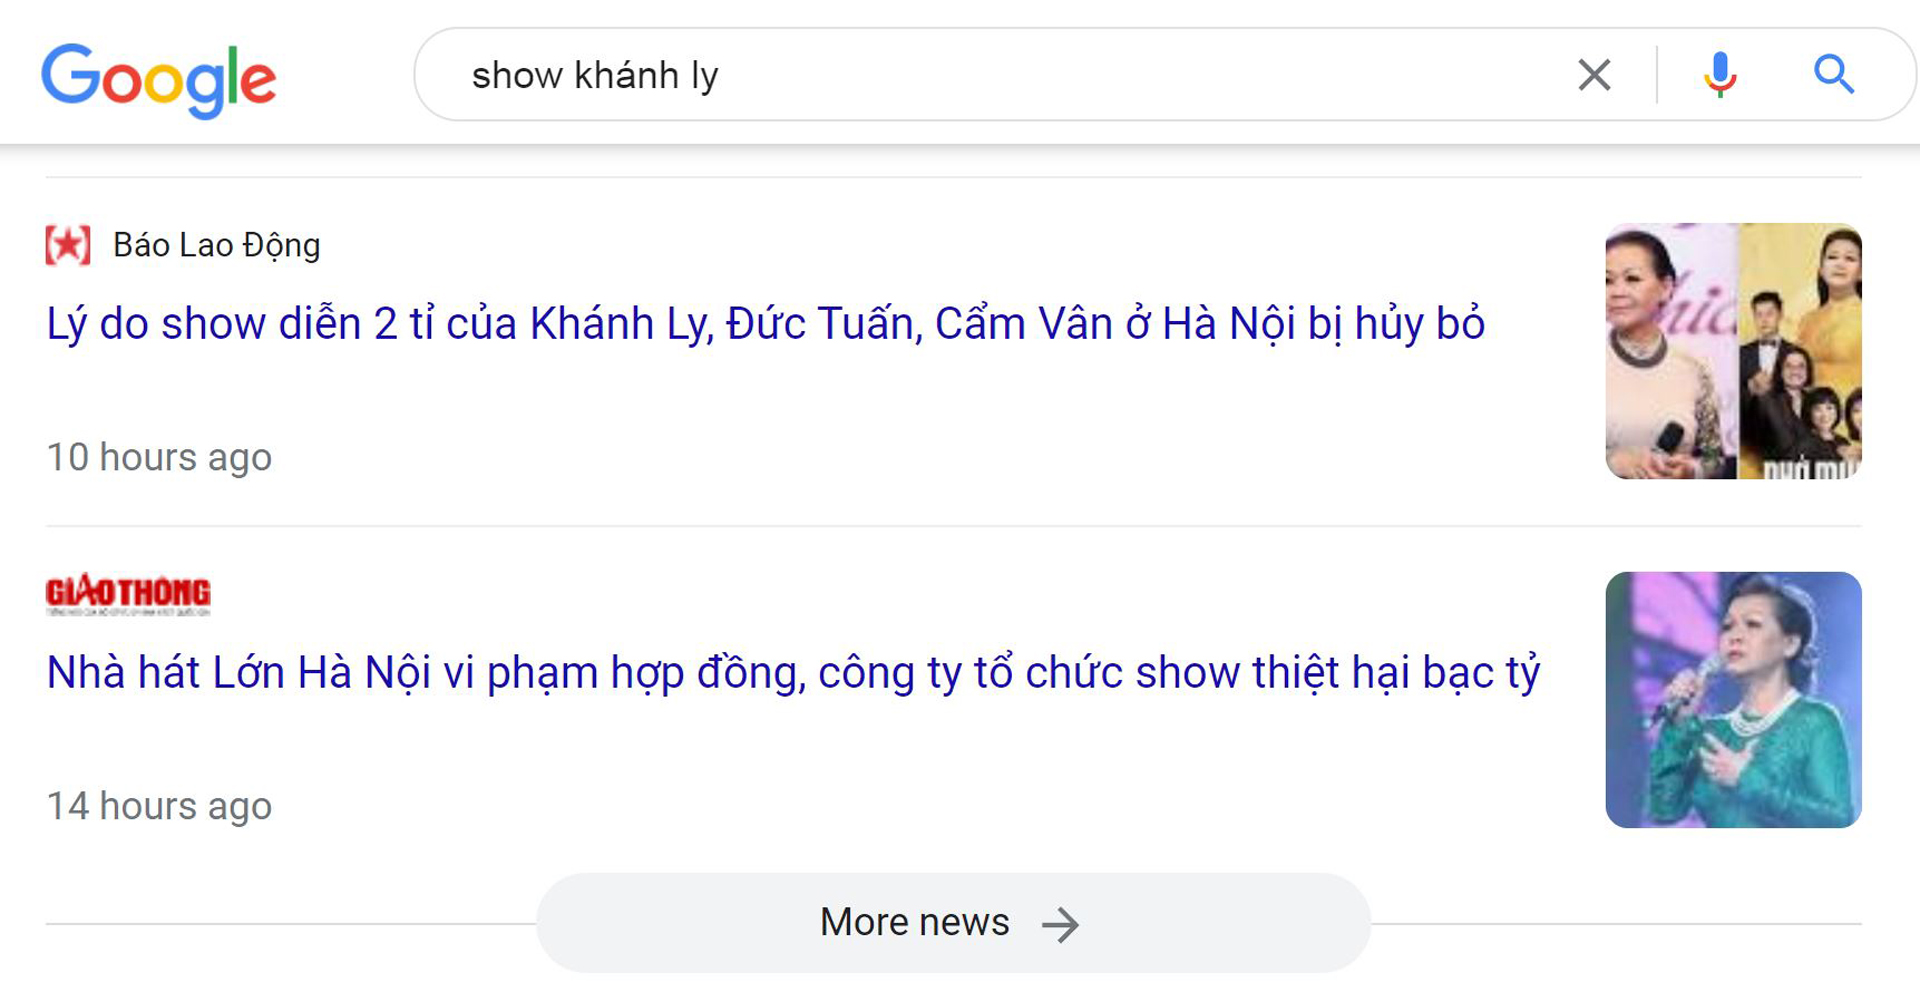 Lý do show diễn 2 tỉ của Khánh Ly, Đức Tuấn, Cẩm Vân ở Hà Nội bị hủy bỏ. (Các tin tương tự về hủy show ca sĩ Khánh Ly đã bị tất cả các mạng tại VN xóa.)